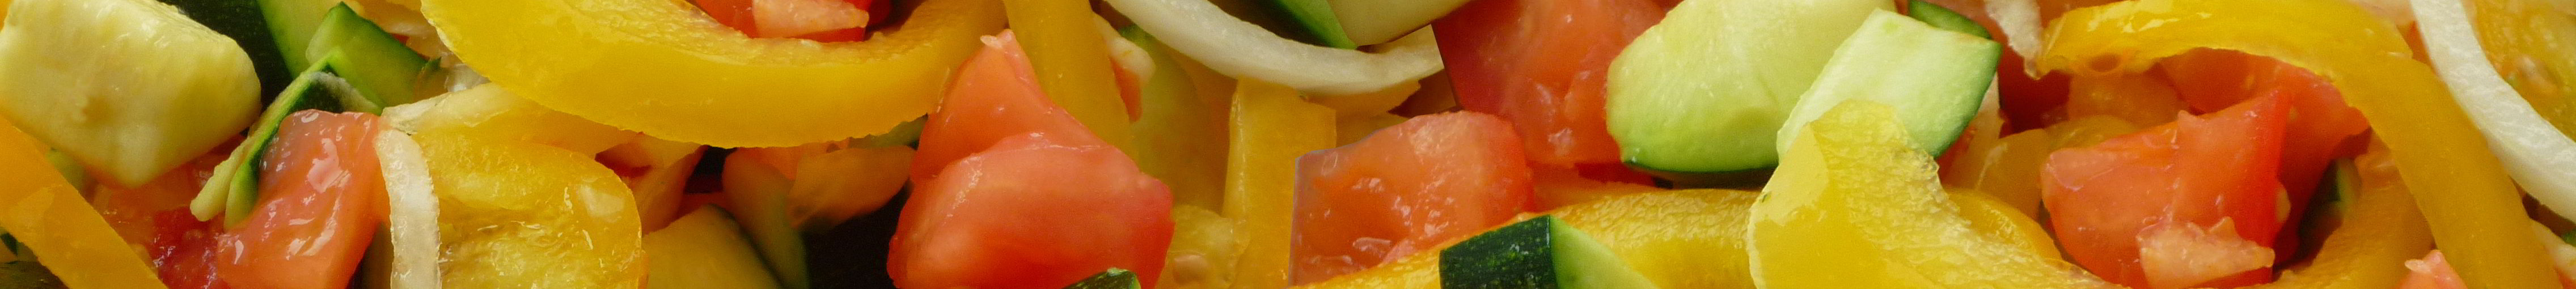 Fraîche Découpe : fruits et légumes frais prêts à l'emploi - Voie verte